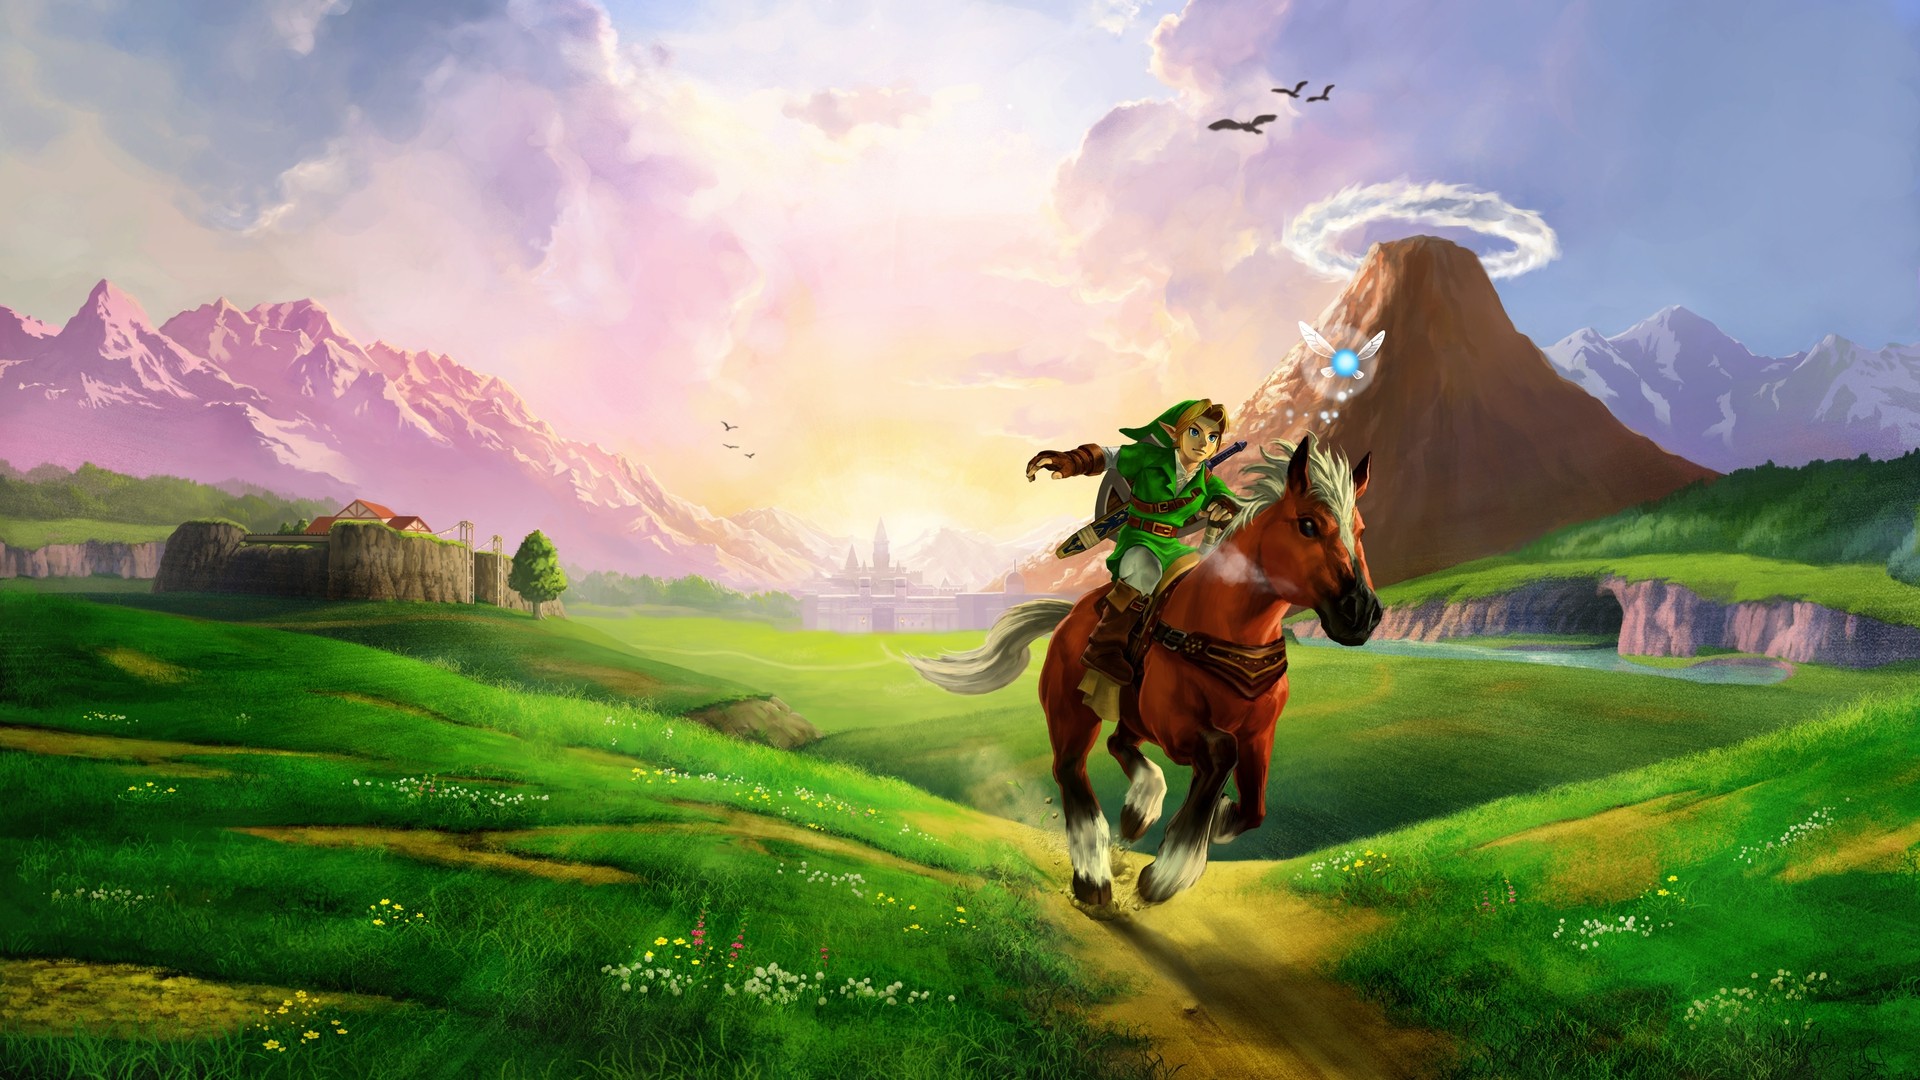 Huyền thoại Legend of Zelda sẽ xuất hiện trên nền tảng mobile?